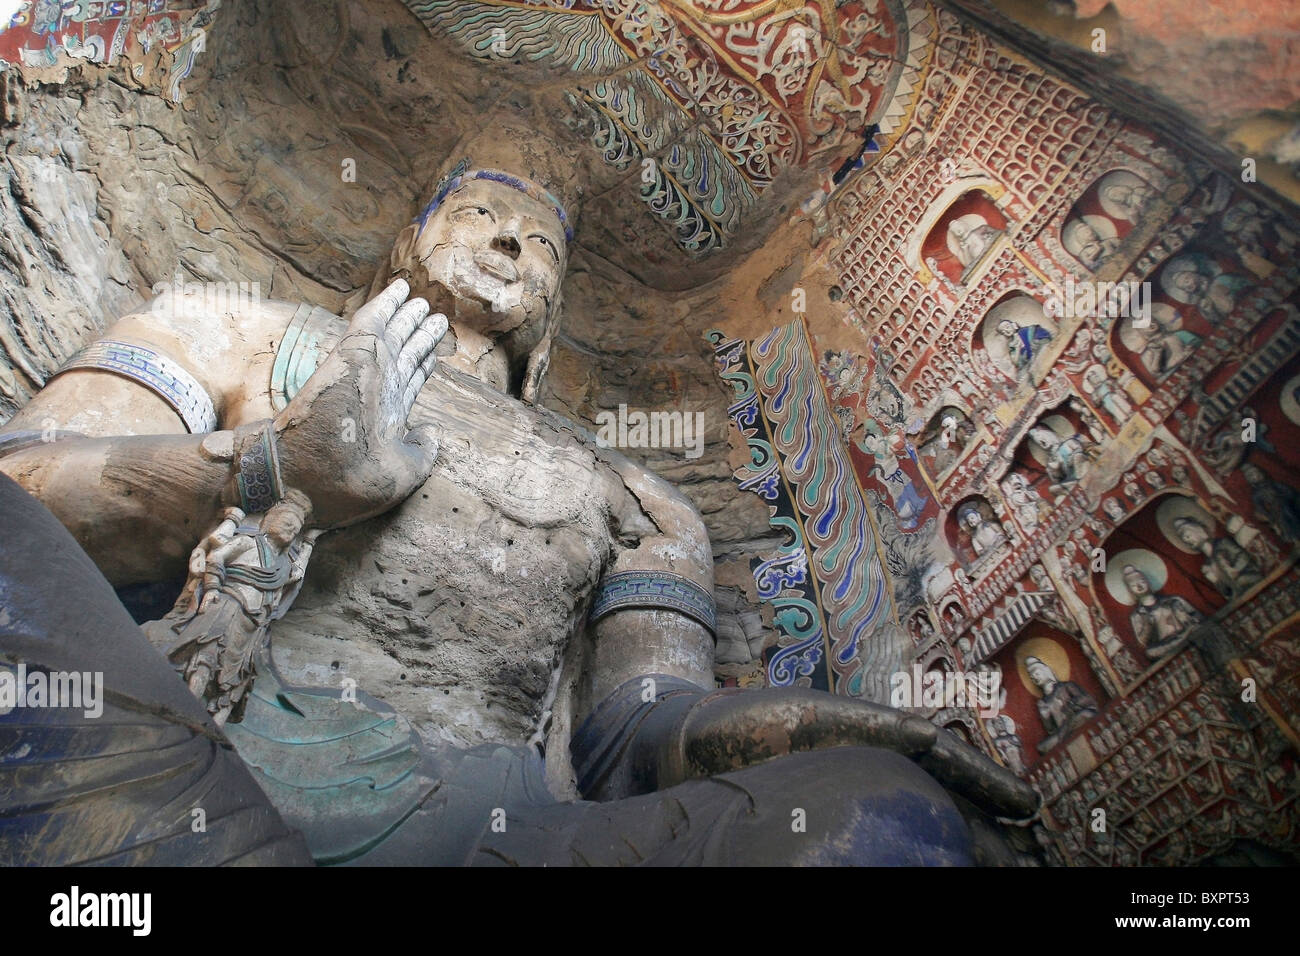 Statue und Schnitzereien In alten buddhistischen Tempel Grotte. Stockfoto